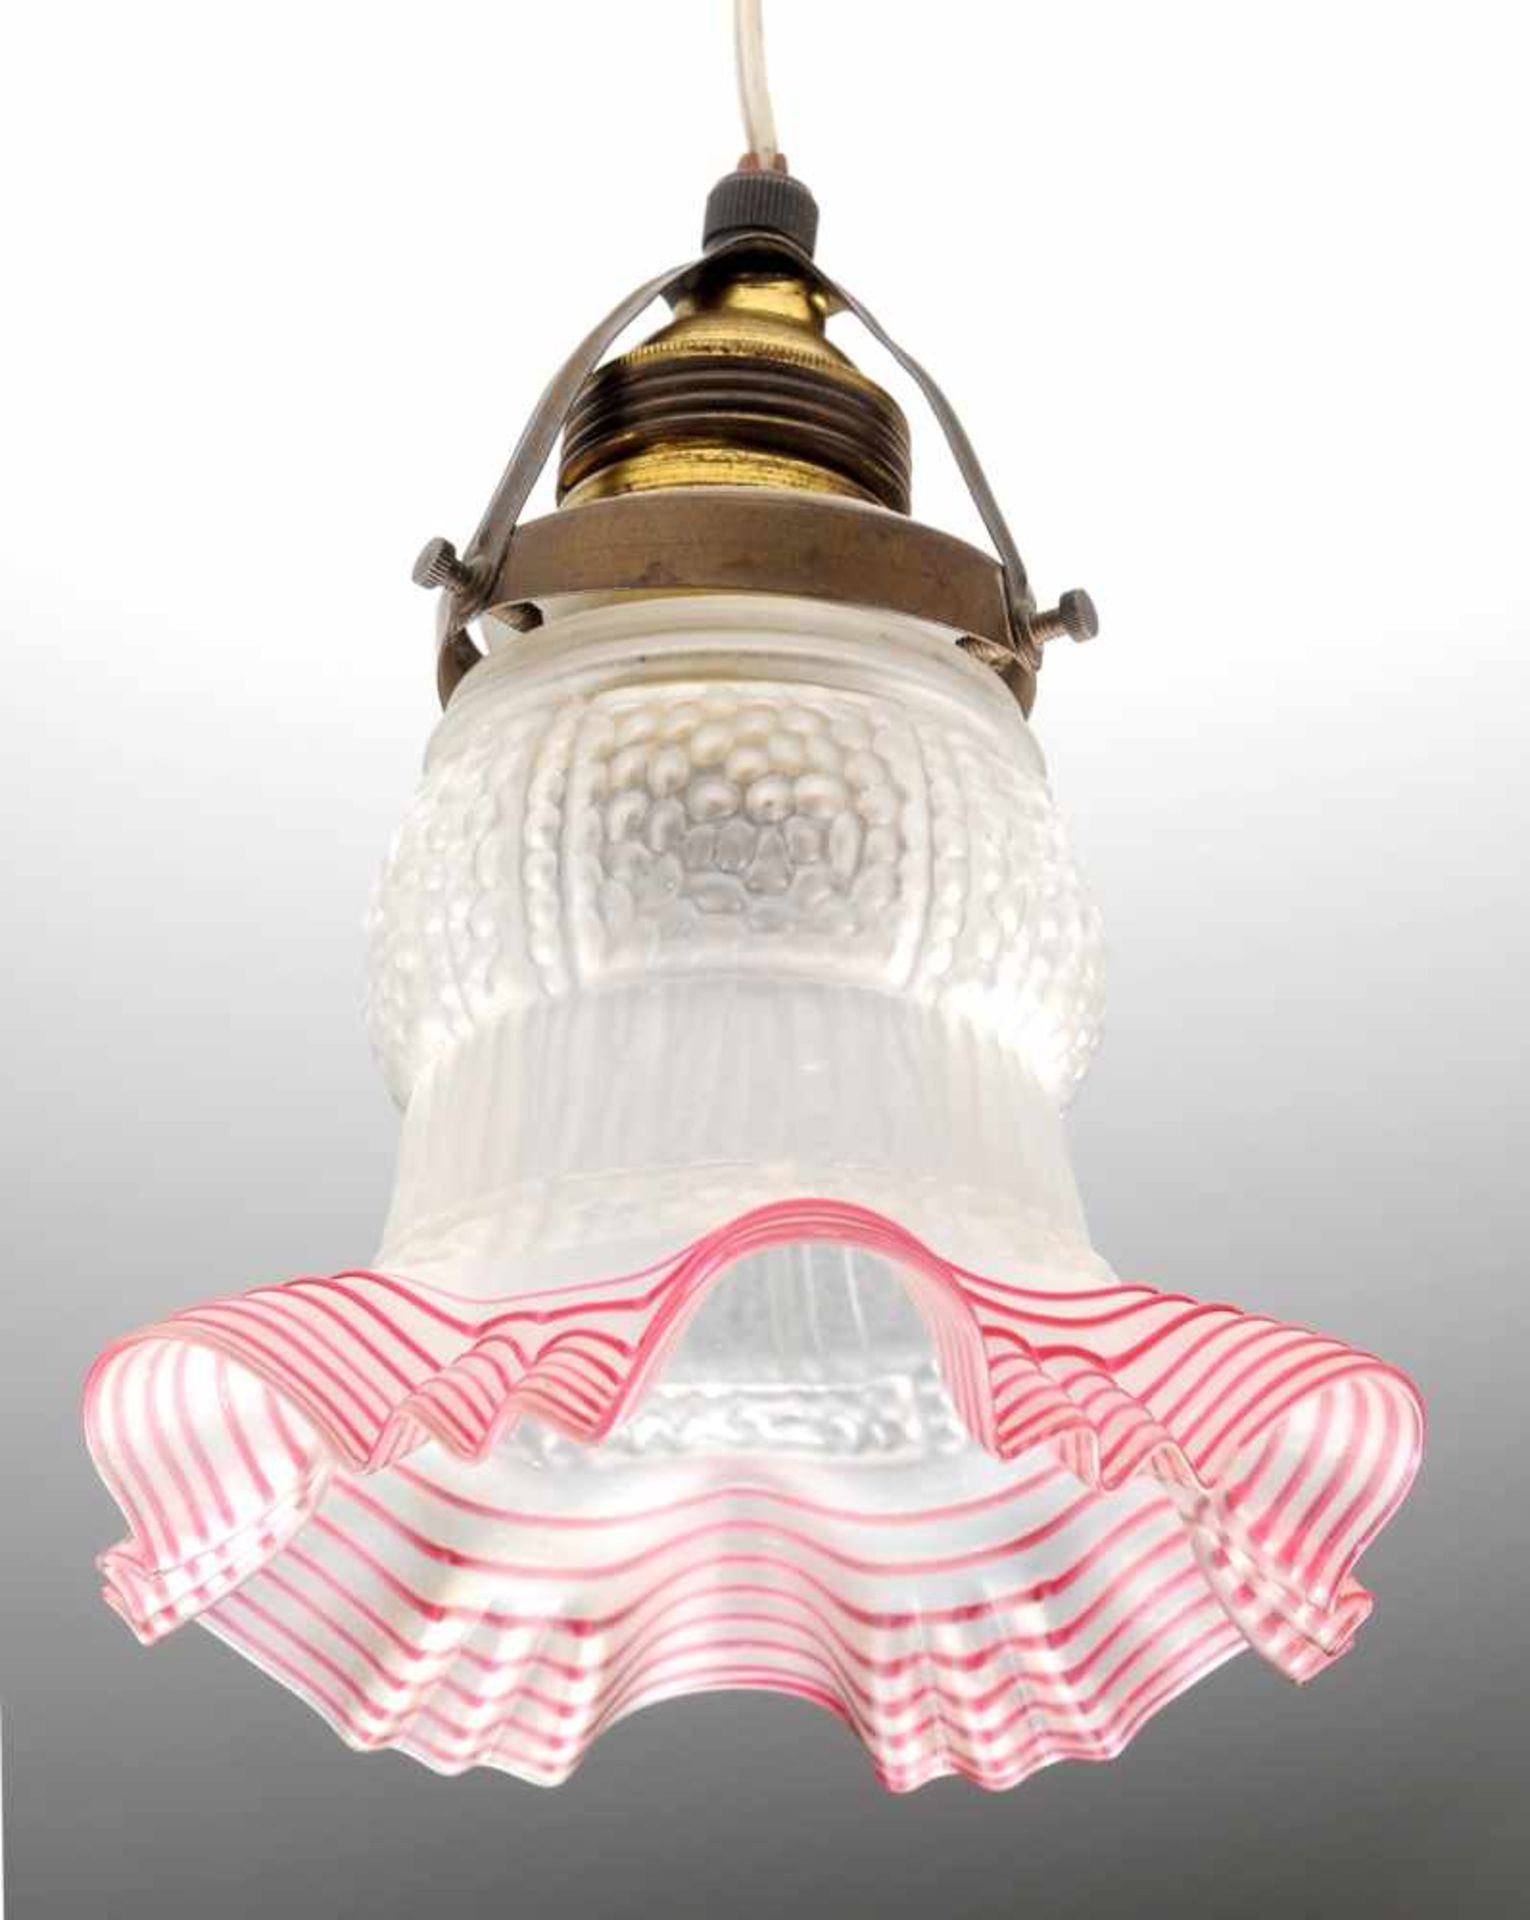 Jugendstil-Lampenschirm 1-flg. Mattiertes Glas, formgeblasen. Blütenförmig. Auf dem gewellten Rand